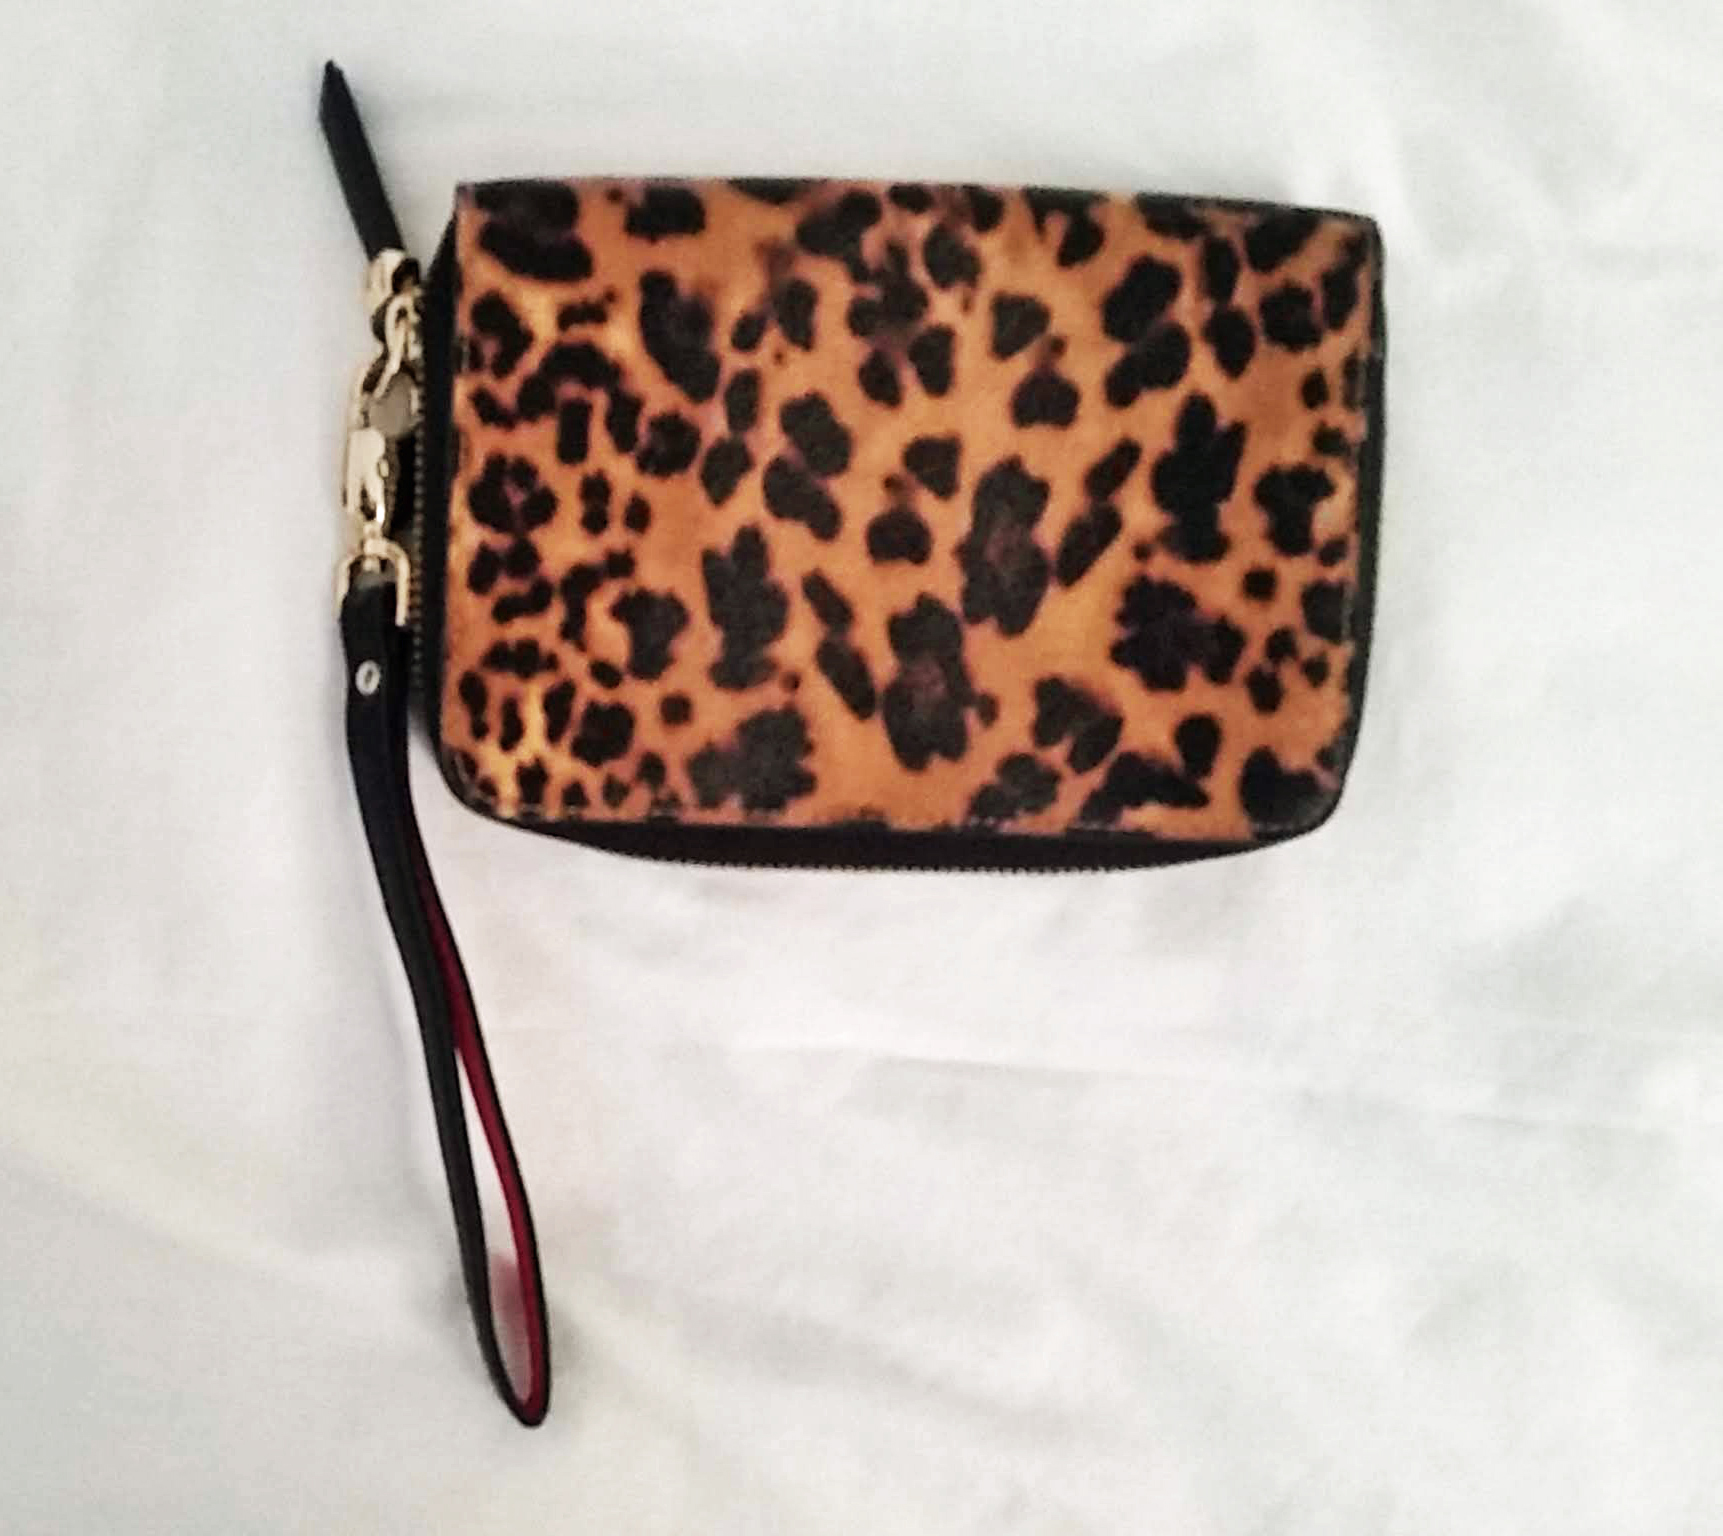 Leopard print wallet